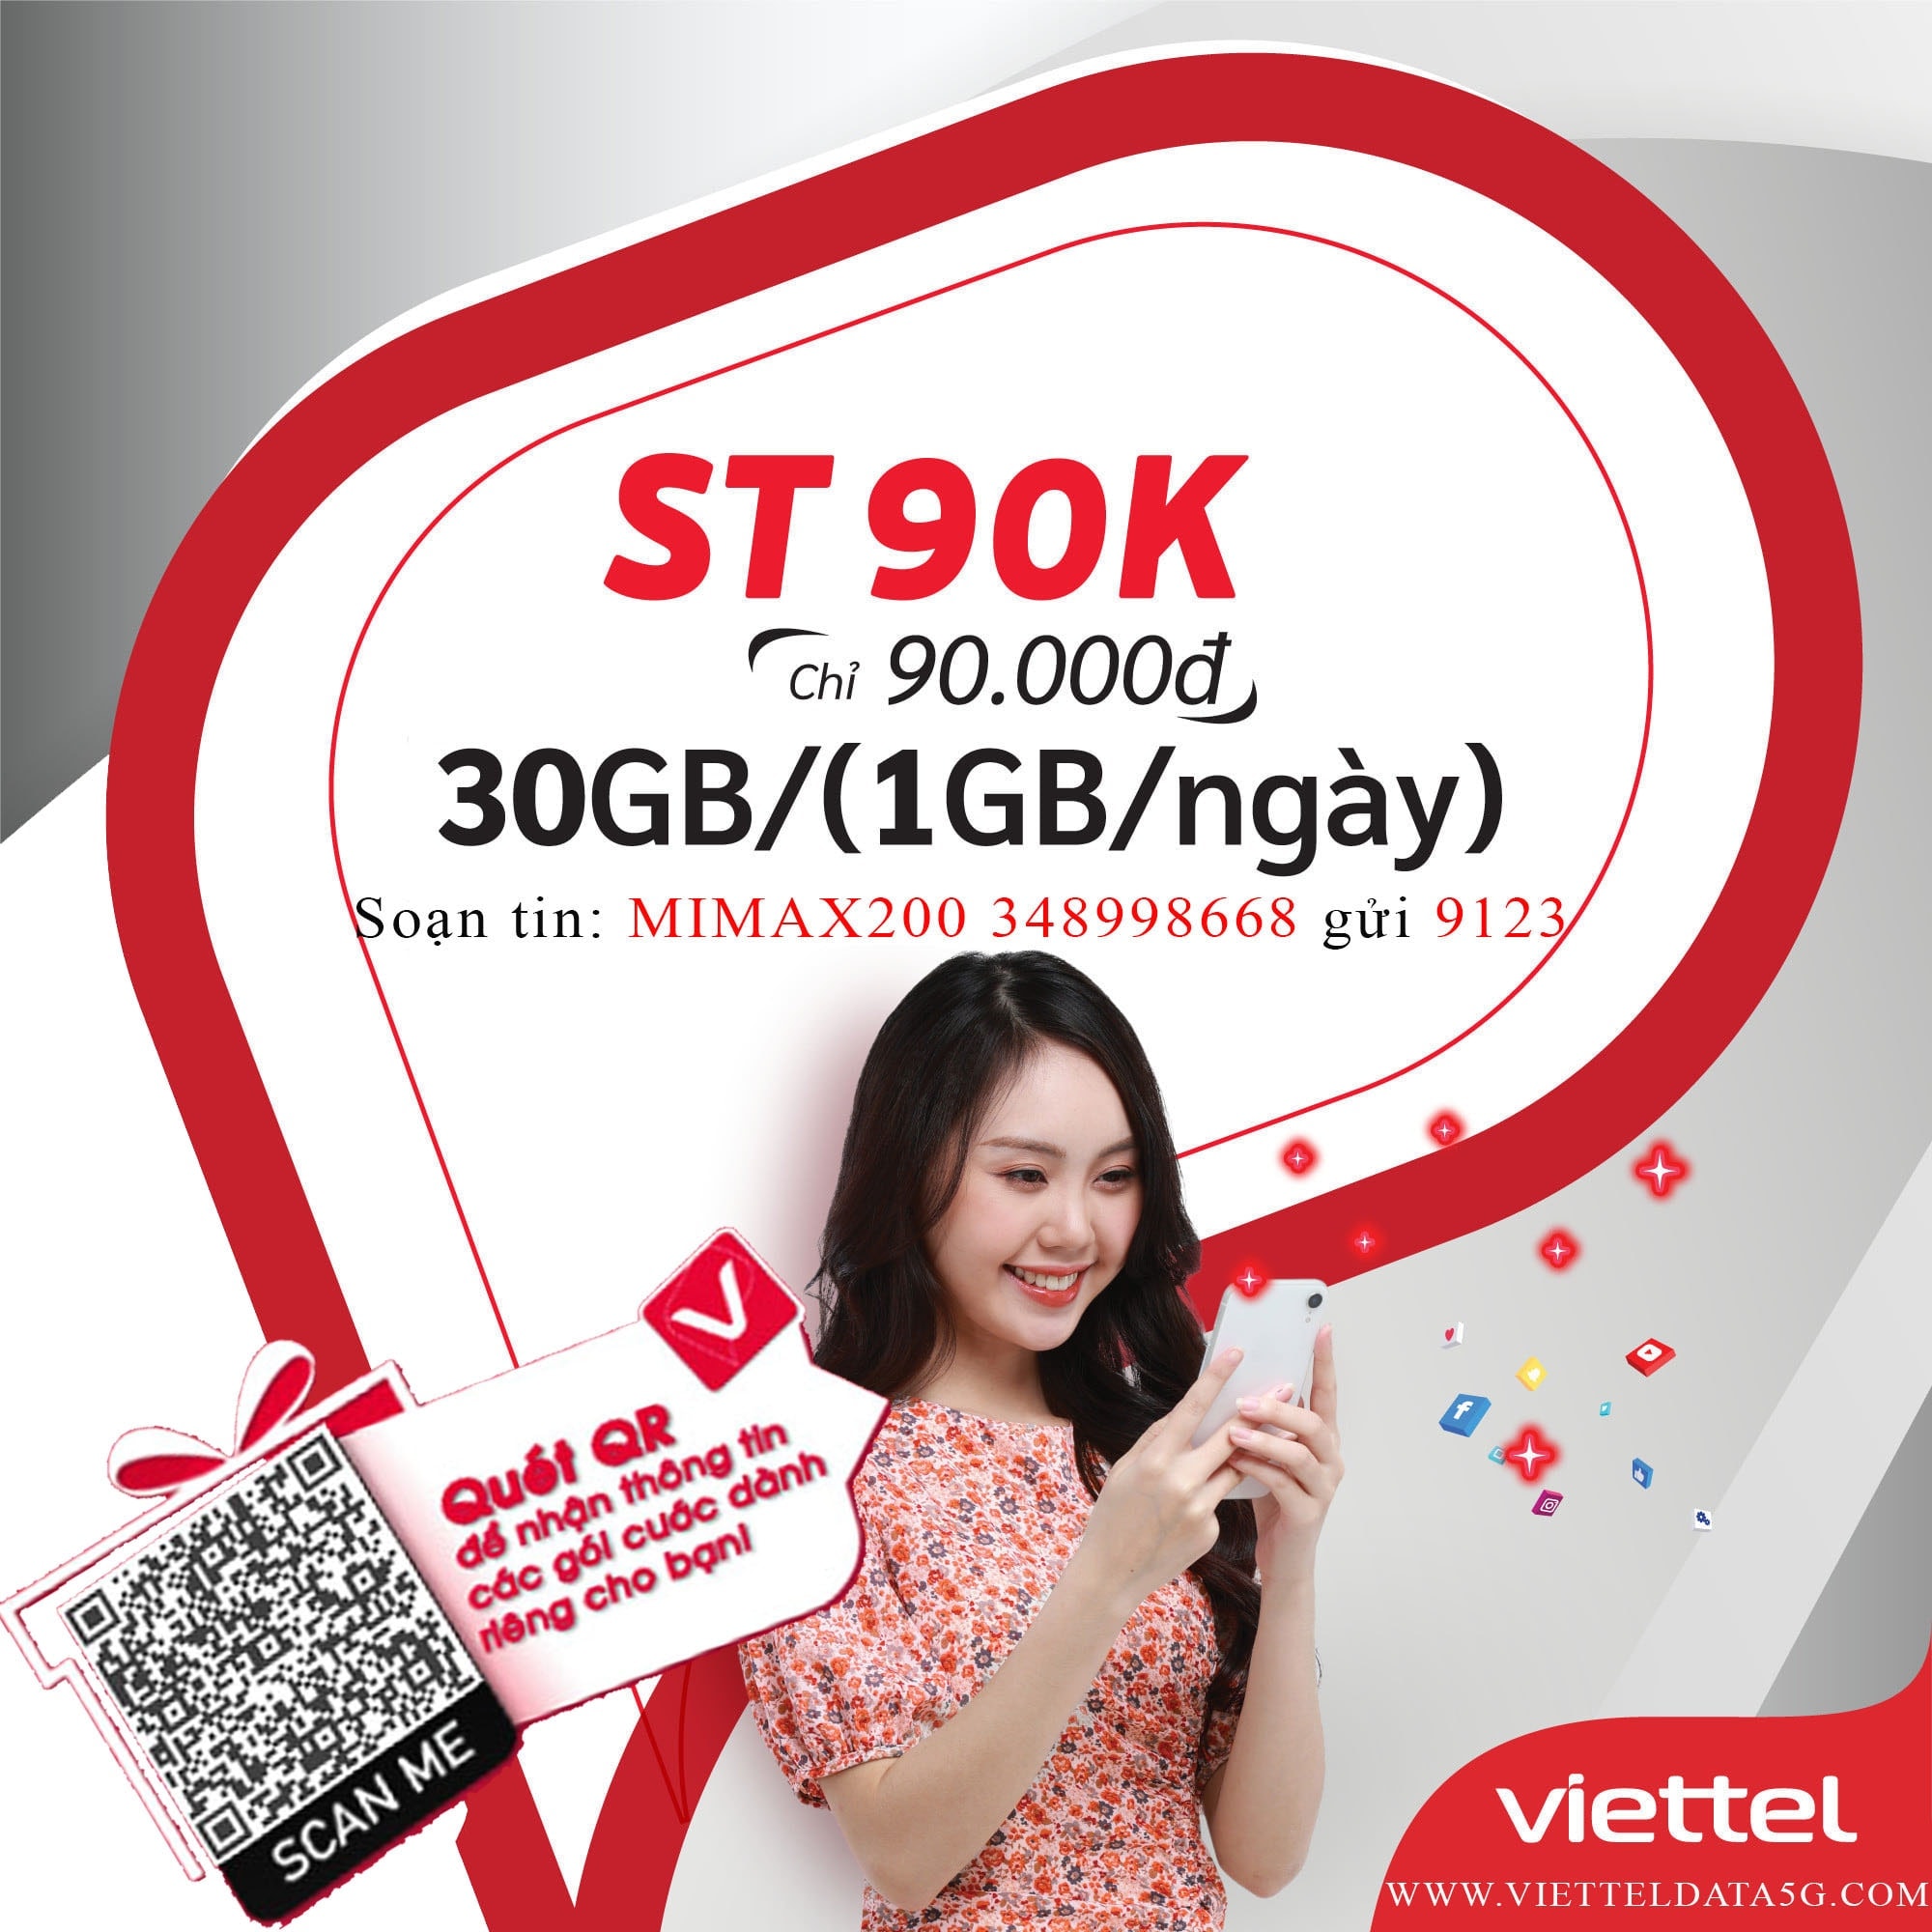 Đăng ký ST90K Viettel nhận ngay 30gb data tốc độ cao và miễn phí truy cập tiktok.